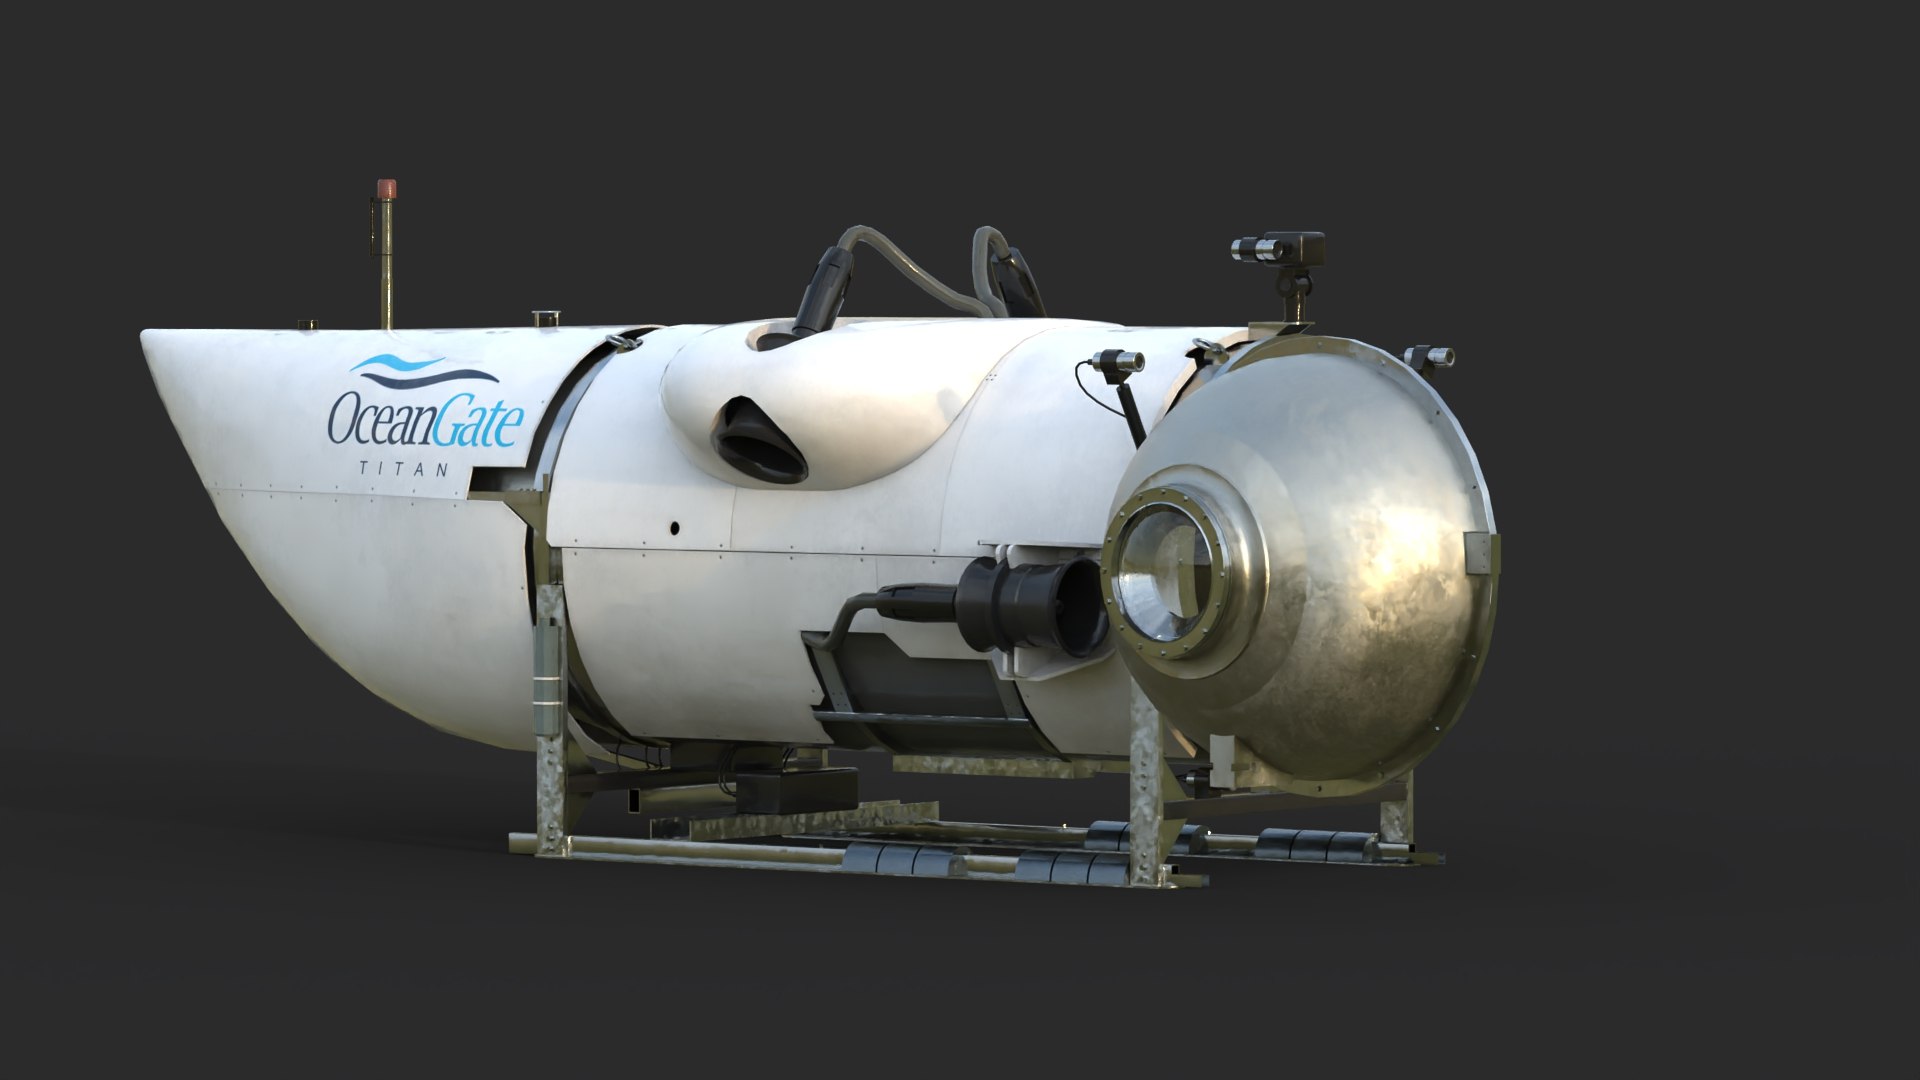 3D OceanGate Titan submarine model - TurboSquid 2086900